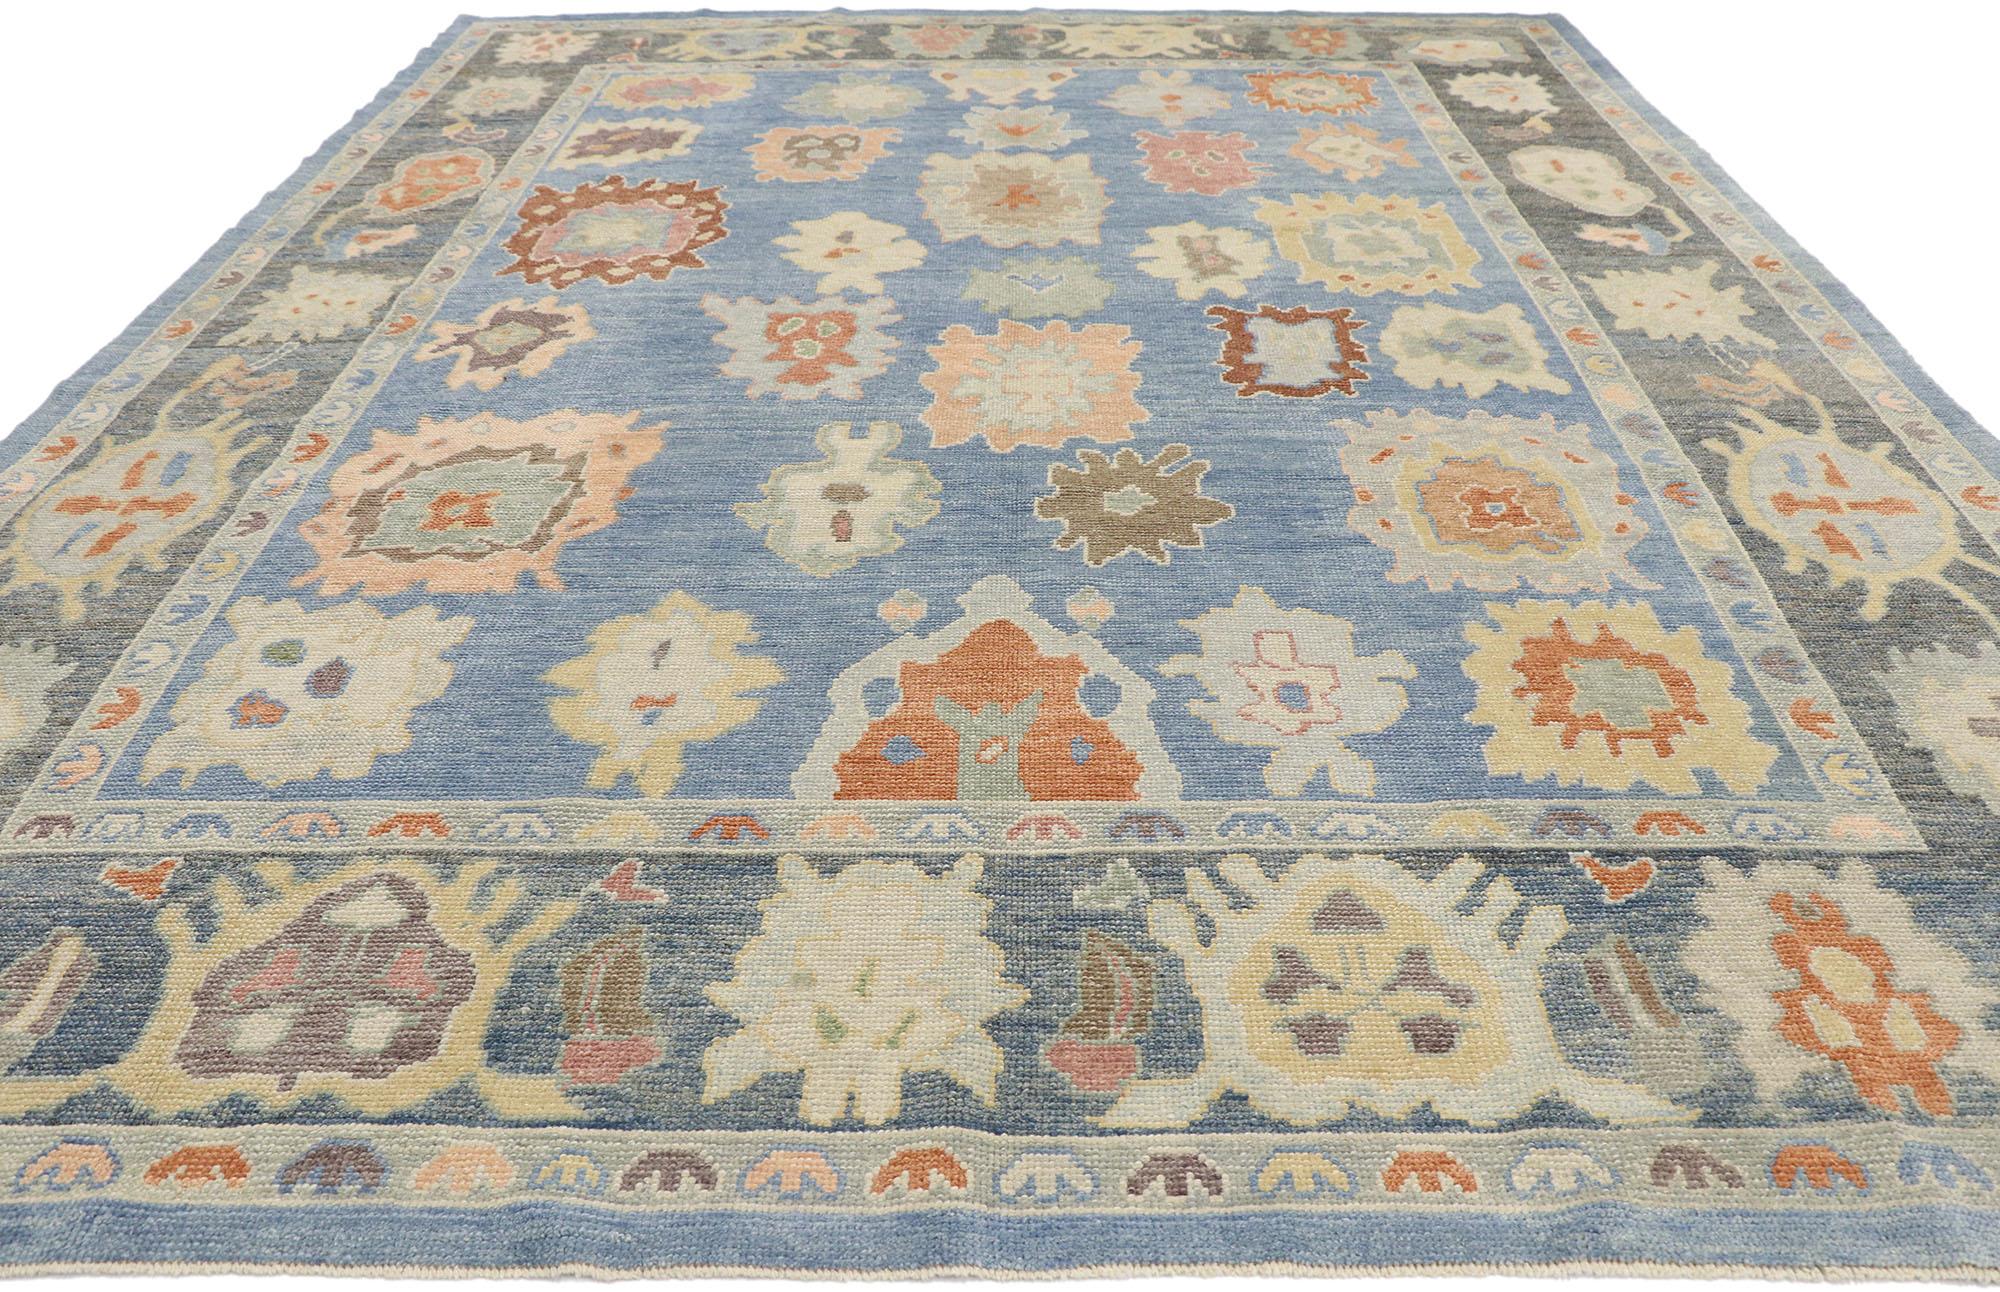 parisian style rug